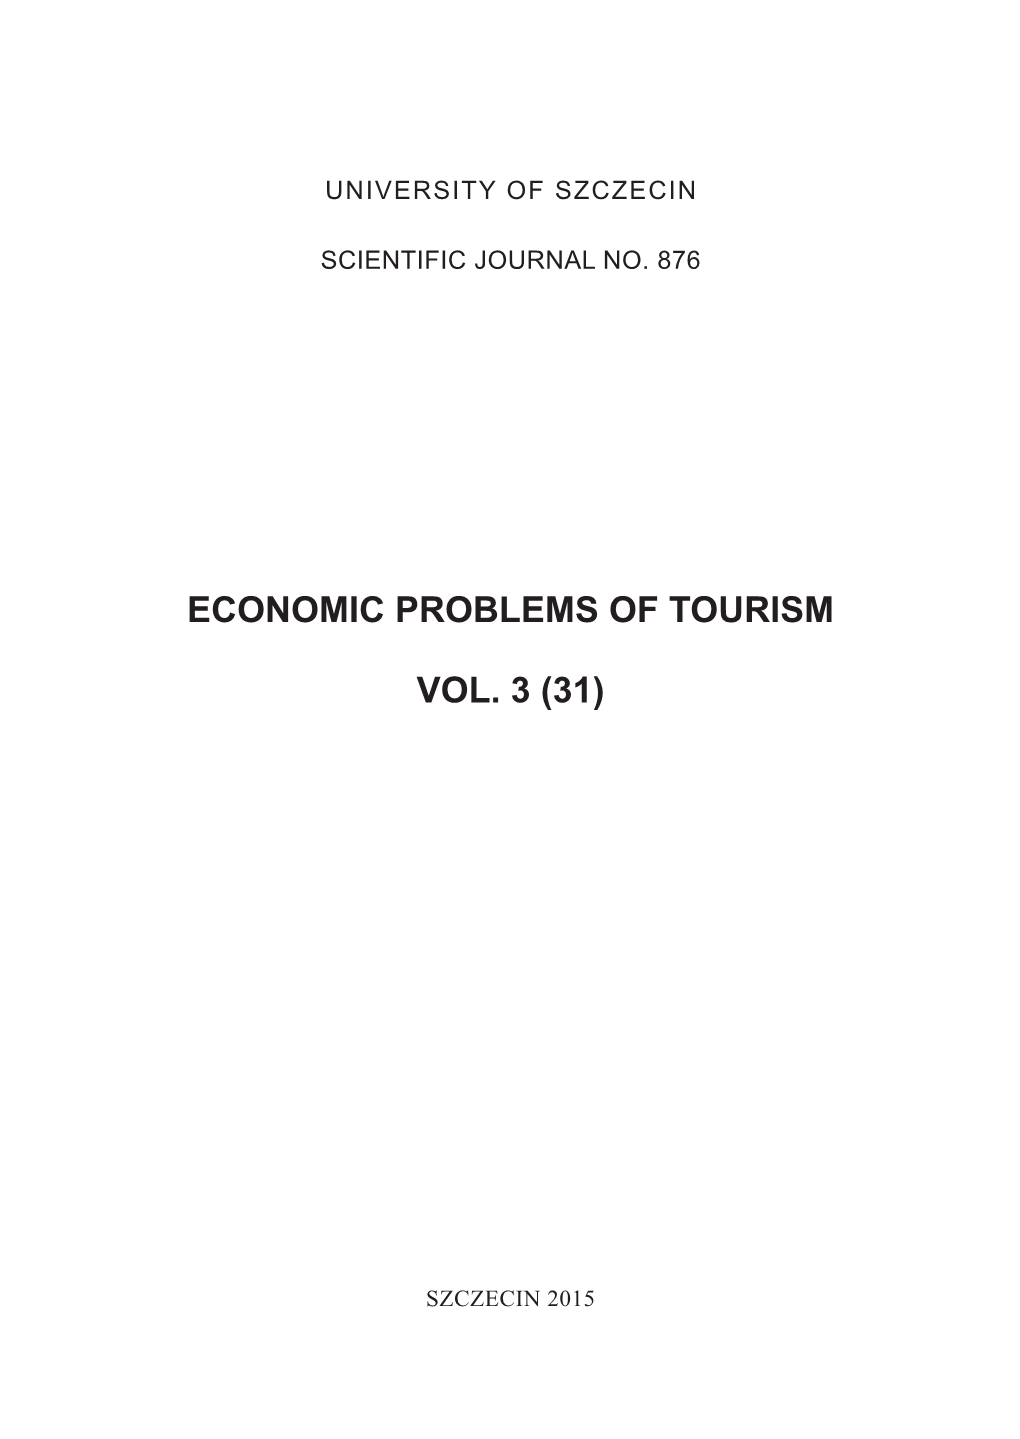 ECONOMIC PROBLEMS of TOURISM Vol. 3 (31) 2015